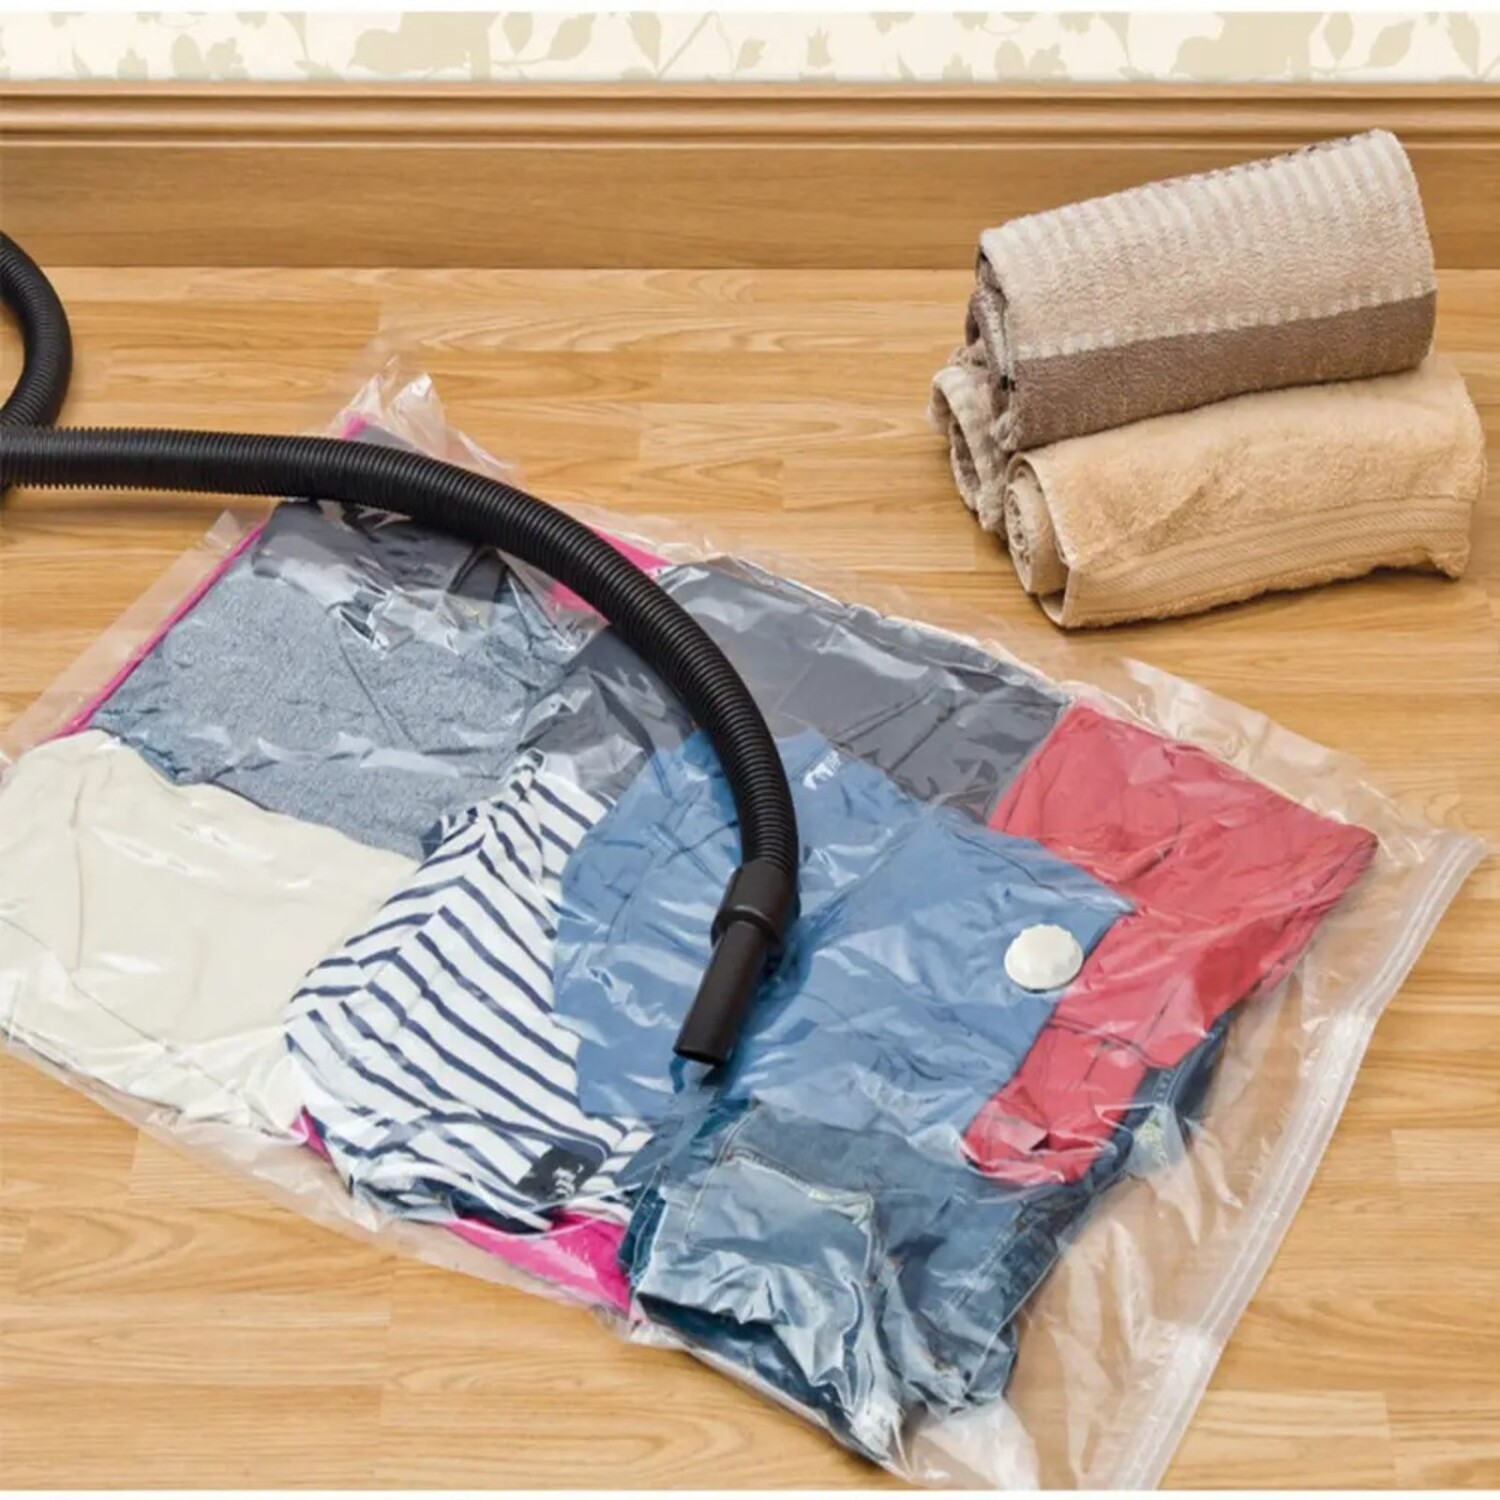 Bolsas para guardar ropa con cierre: solución práctica y eficiente